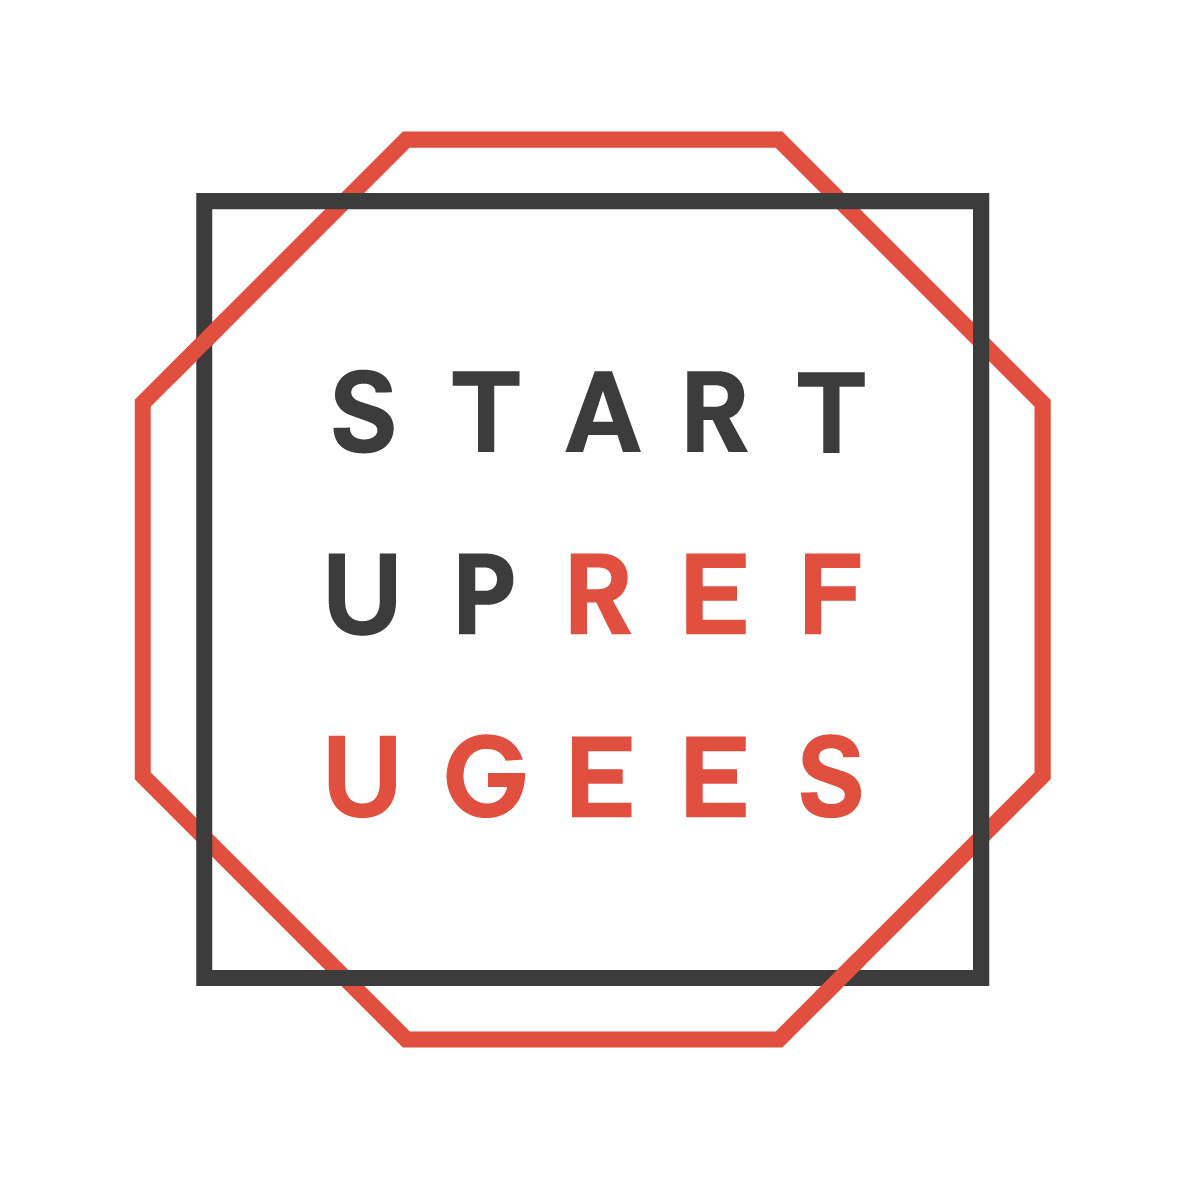 startup_refugees_logo_jpeg.jpg (187 KB)